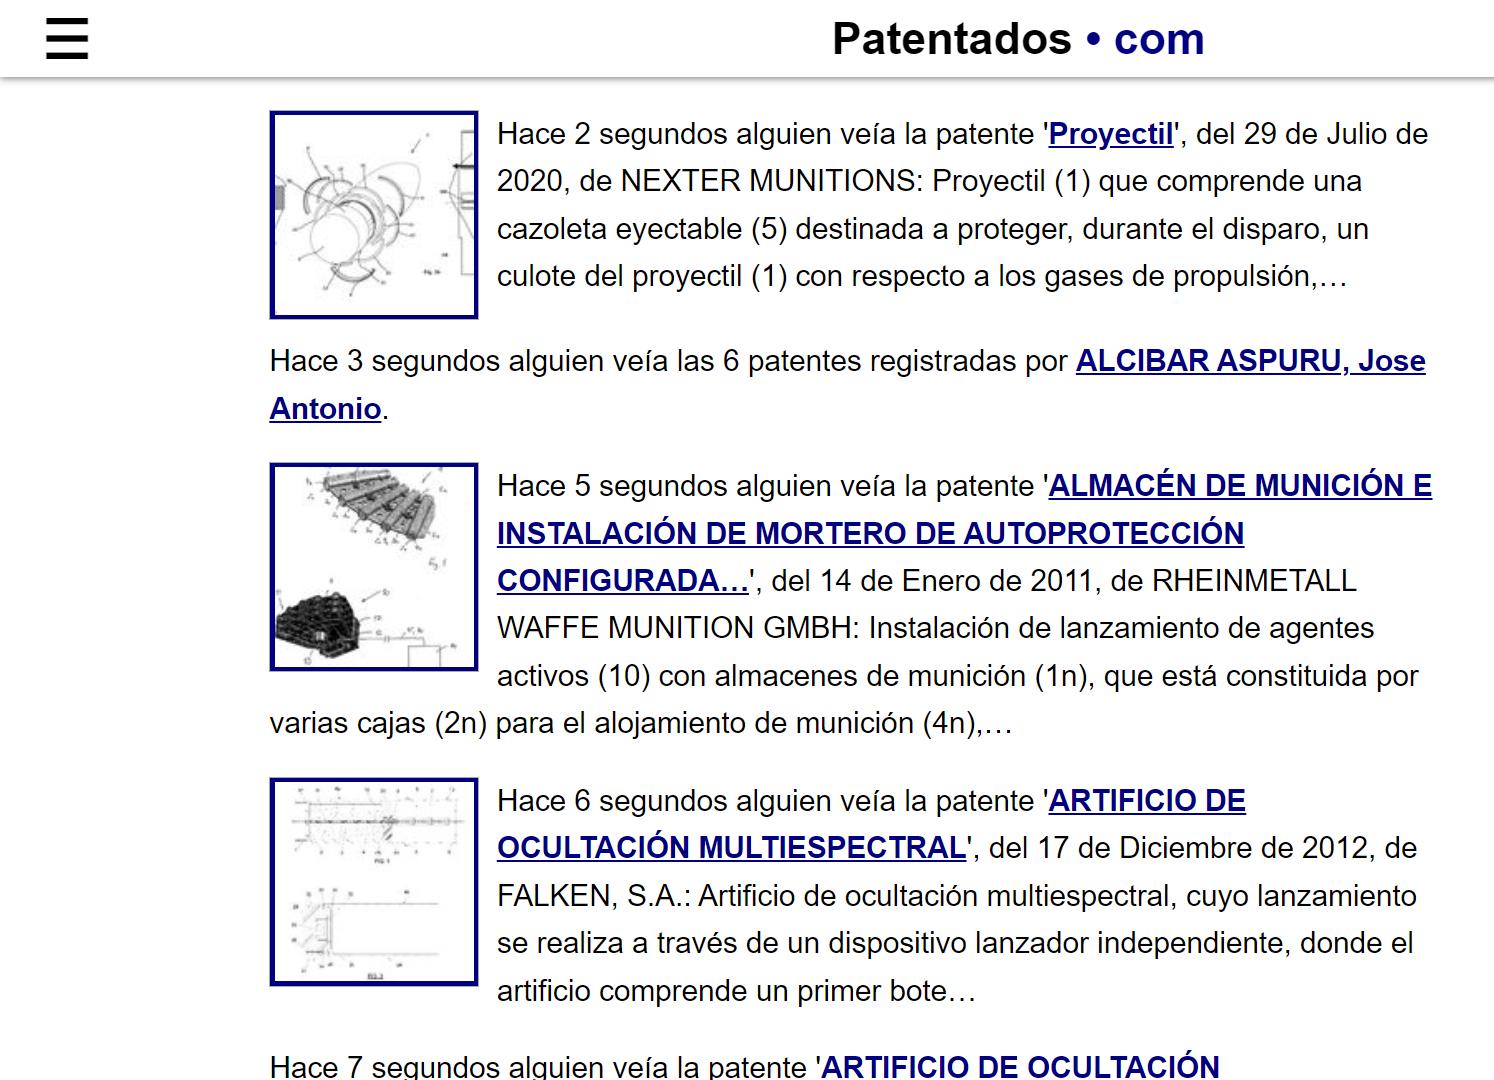 Sección de patentes vistas recientemente, en patentados.com.